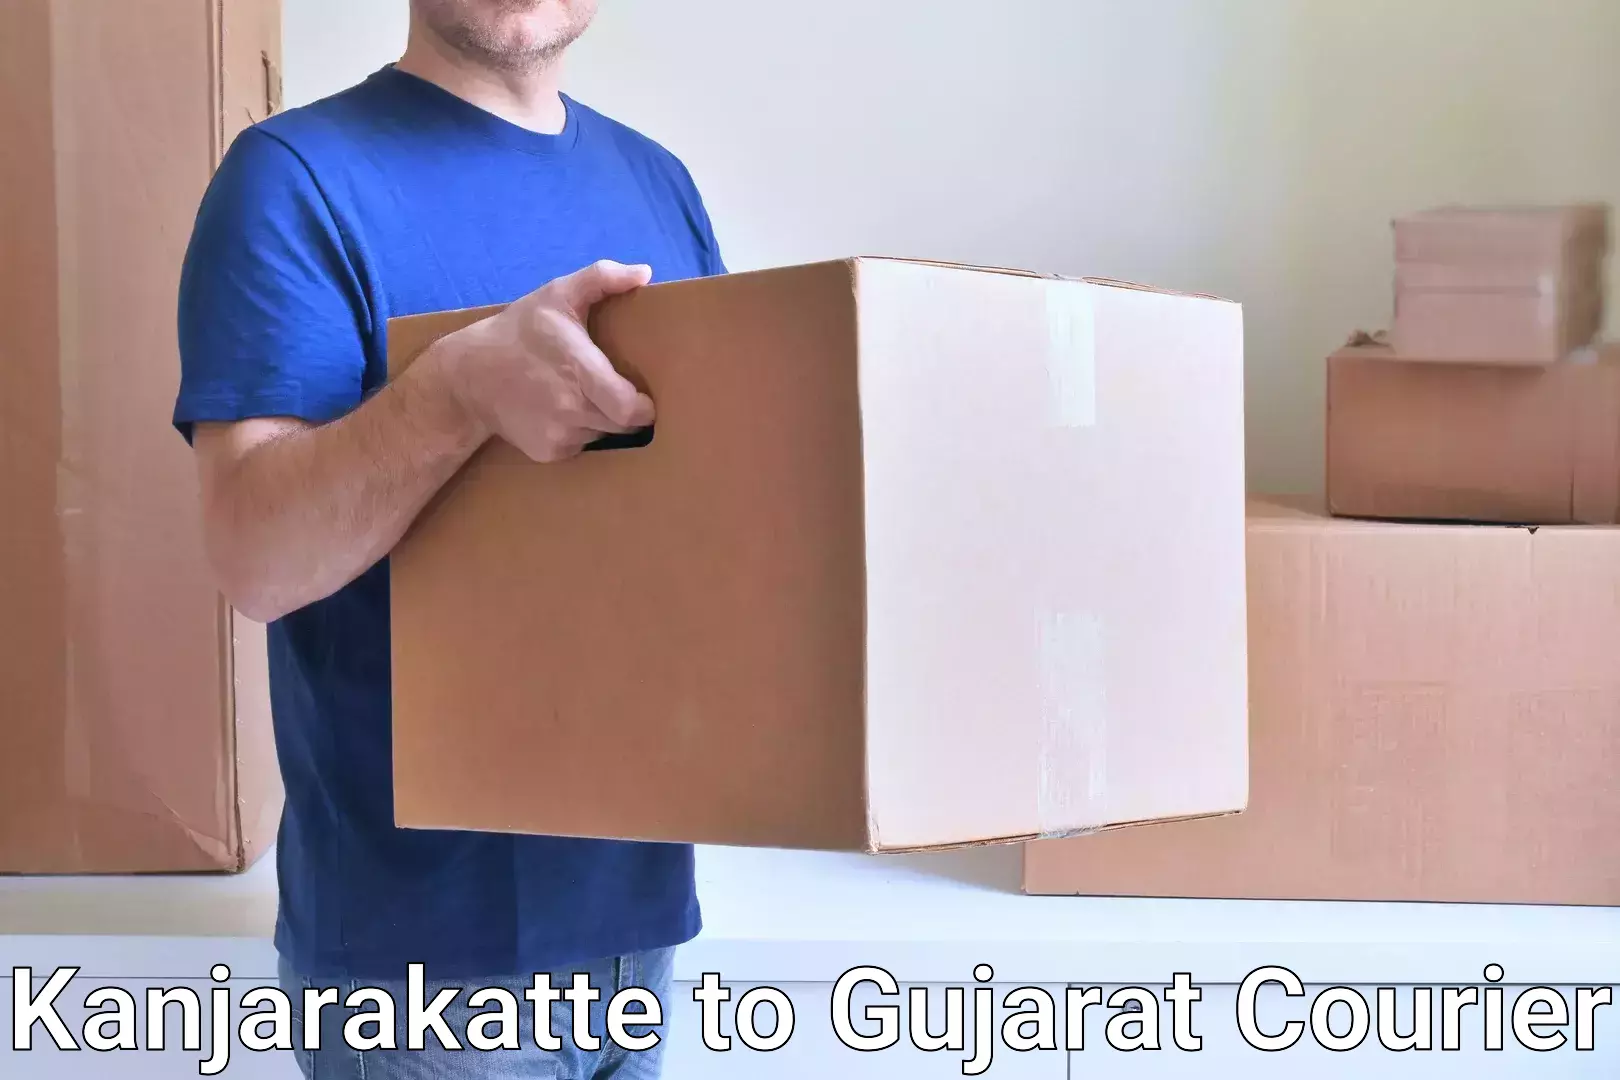 Efficient parcel service Kanjarakatte to GIDC